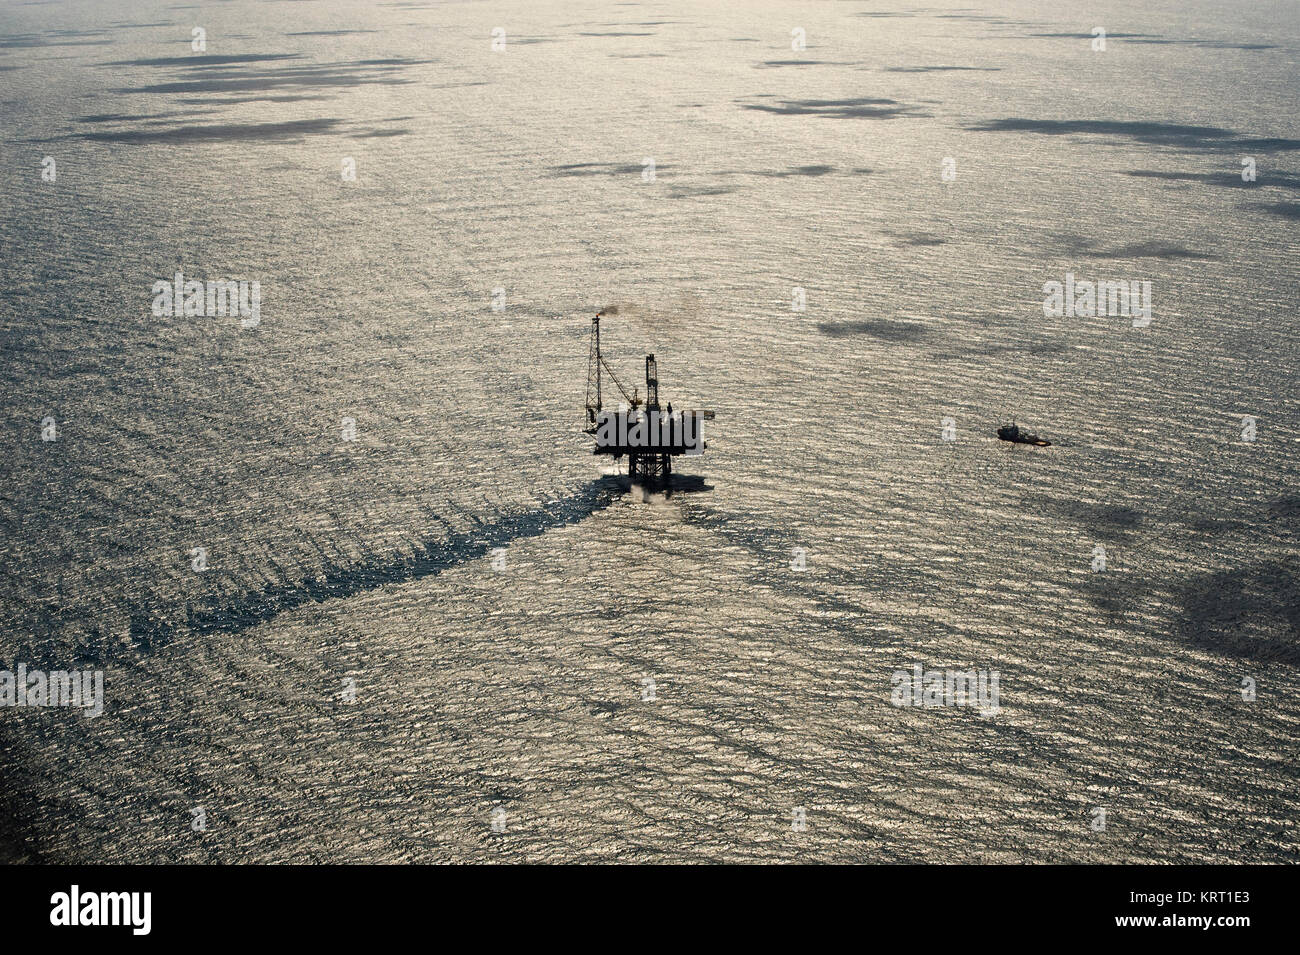 Erdöl-Feld. Oelfoerdergebiet in der Nordsee. Schoen sieht es aus. Industriegebiet Foto de stock